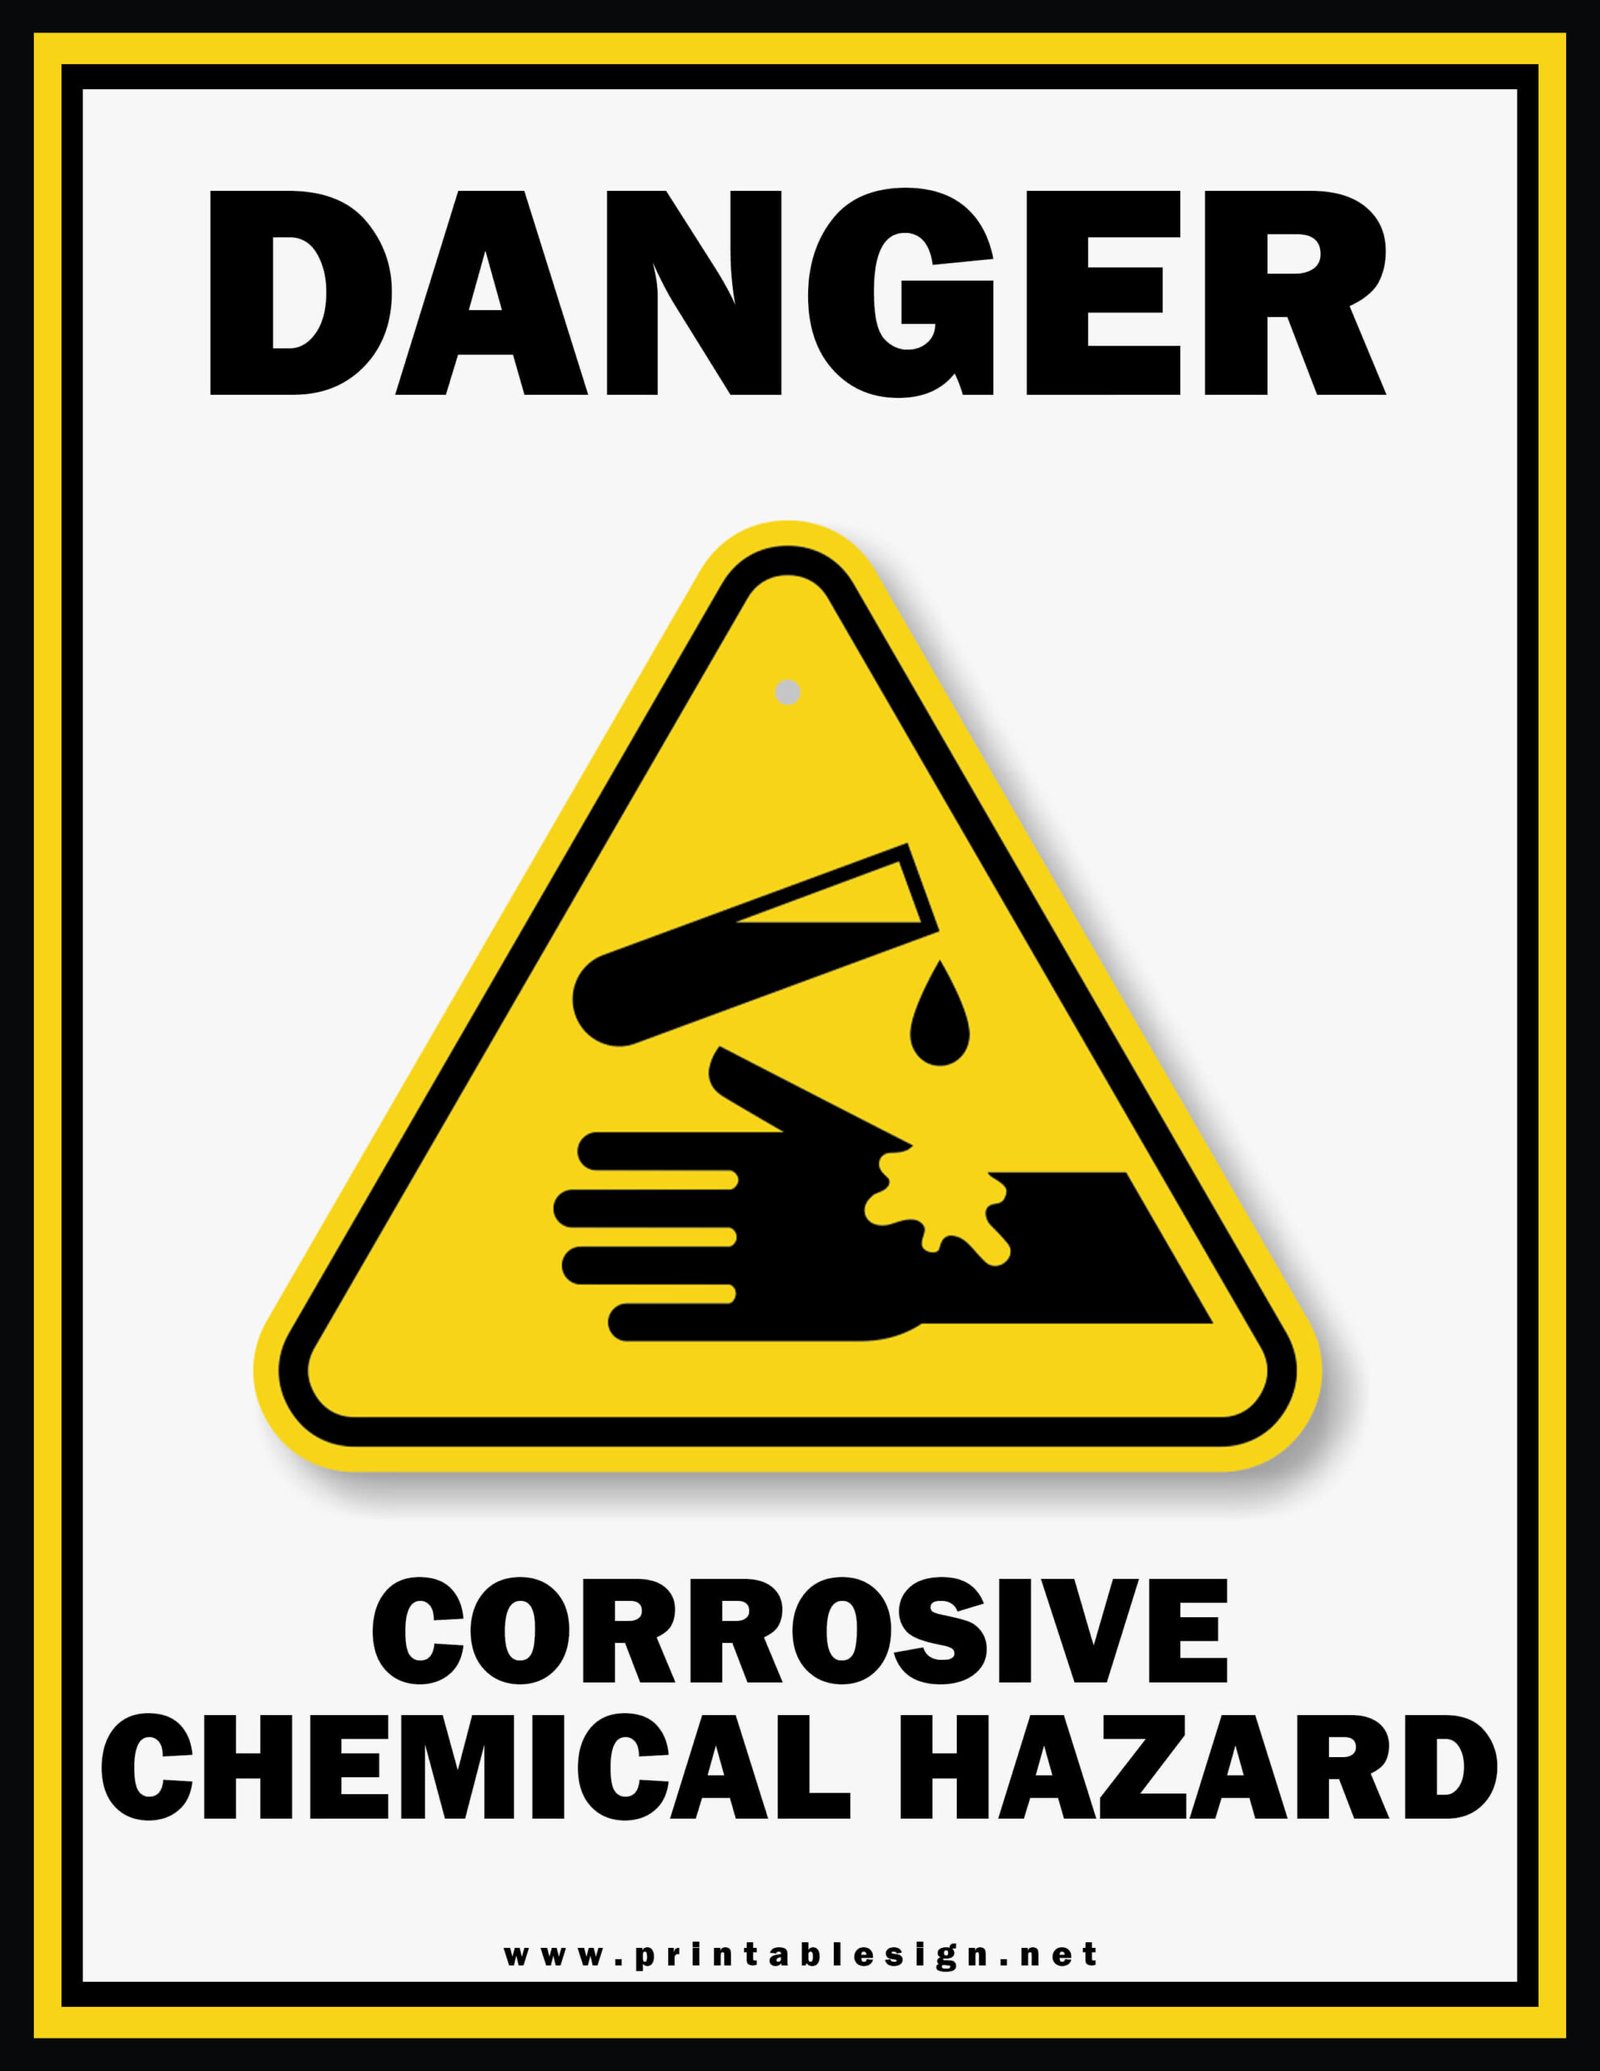 Danger Harmful Chemicals Safety Sign